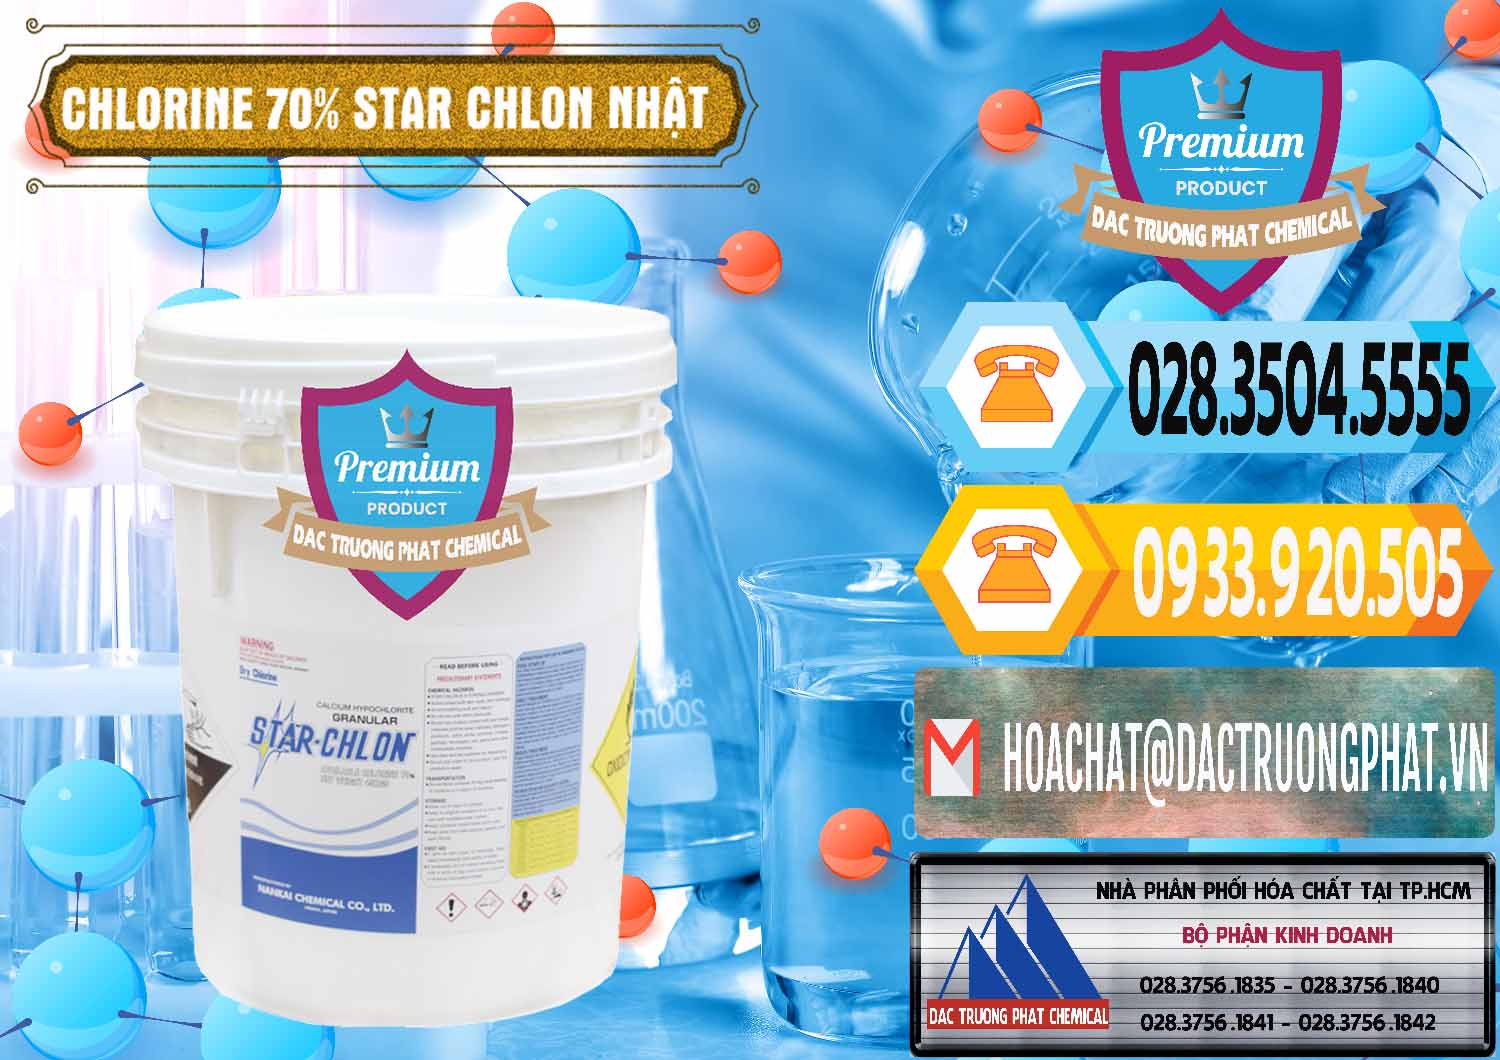 Nơi bán & cung cấp Clorin – Chlorine 70% Star Chlon Nhật Bản Japan - 0243 - Chuyên cung cấp và phân phối hóa chất tại TP.HCM - hoachattayrua.net